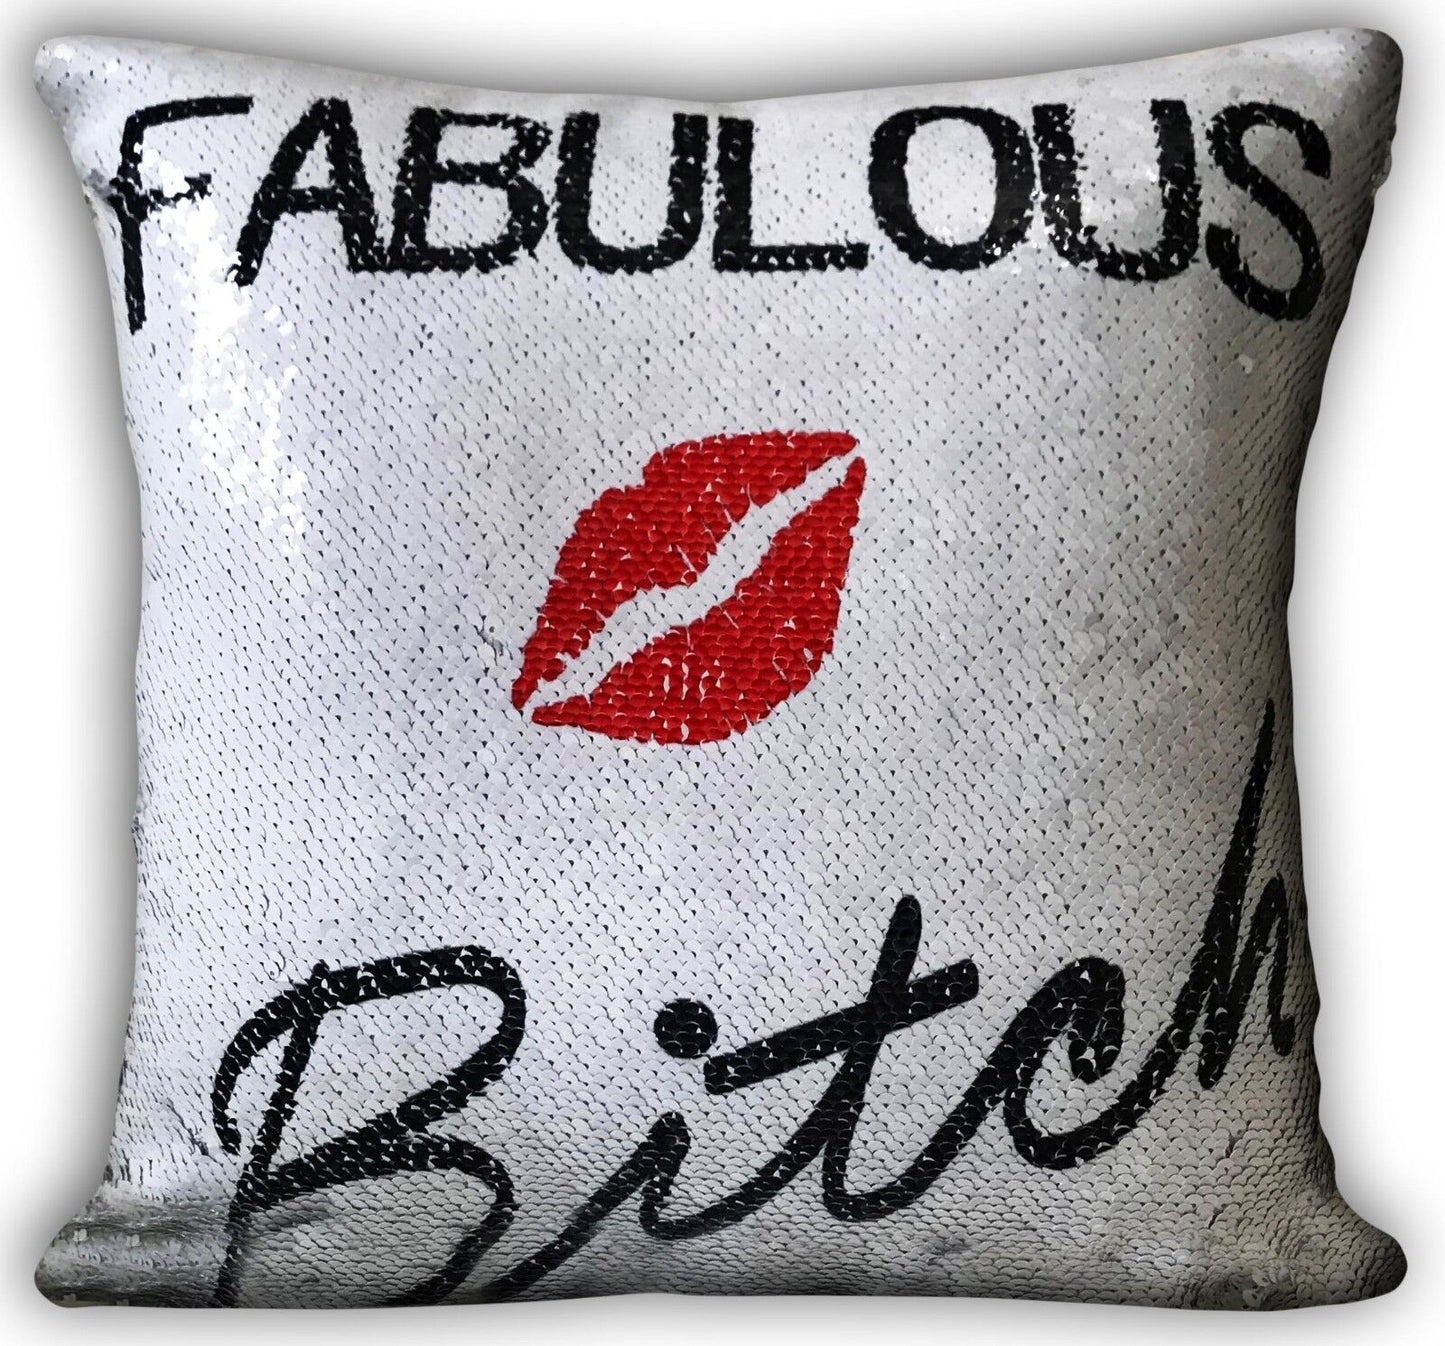 Fabulous Bitch Cushions